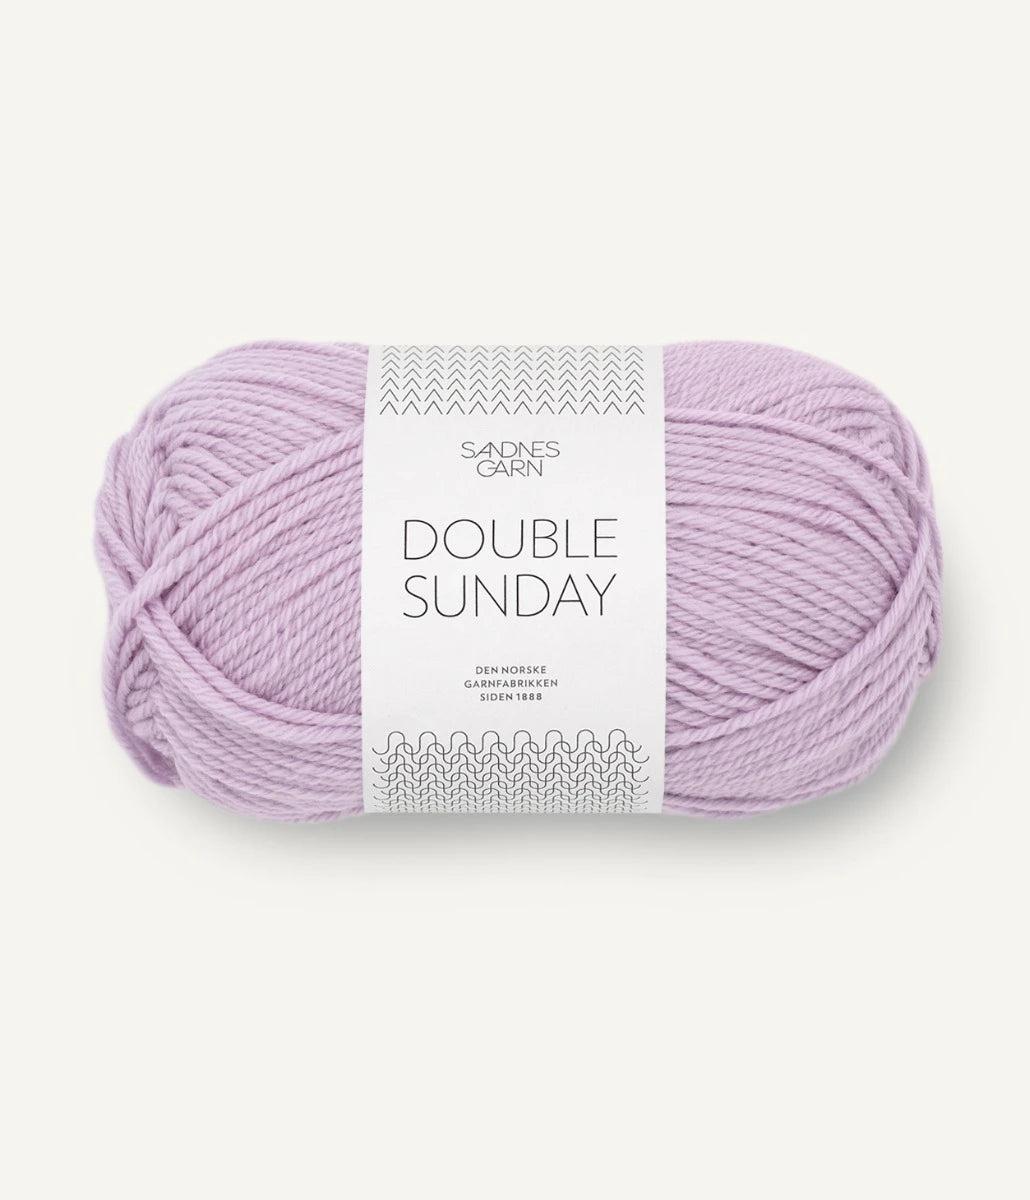 Kuvassa on Sandnes Garn Double Sunday -lanka (yarn) värissä Lilac.